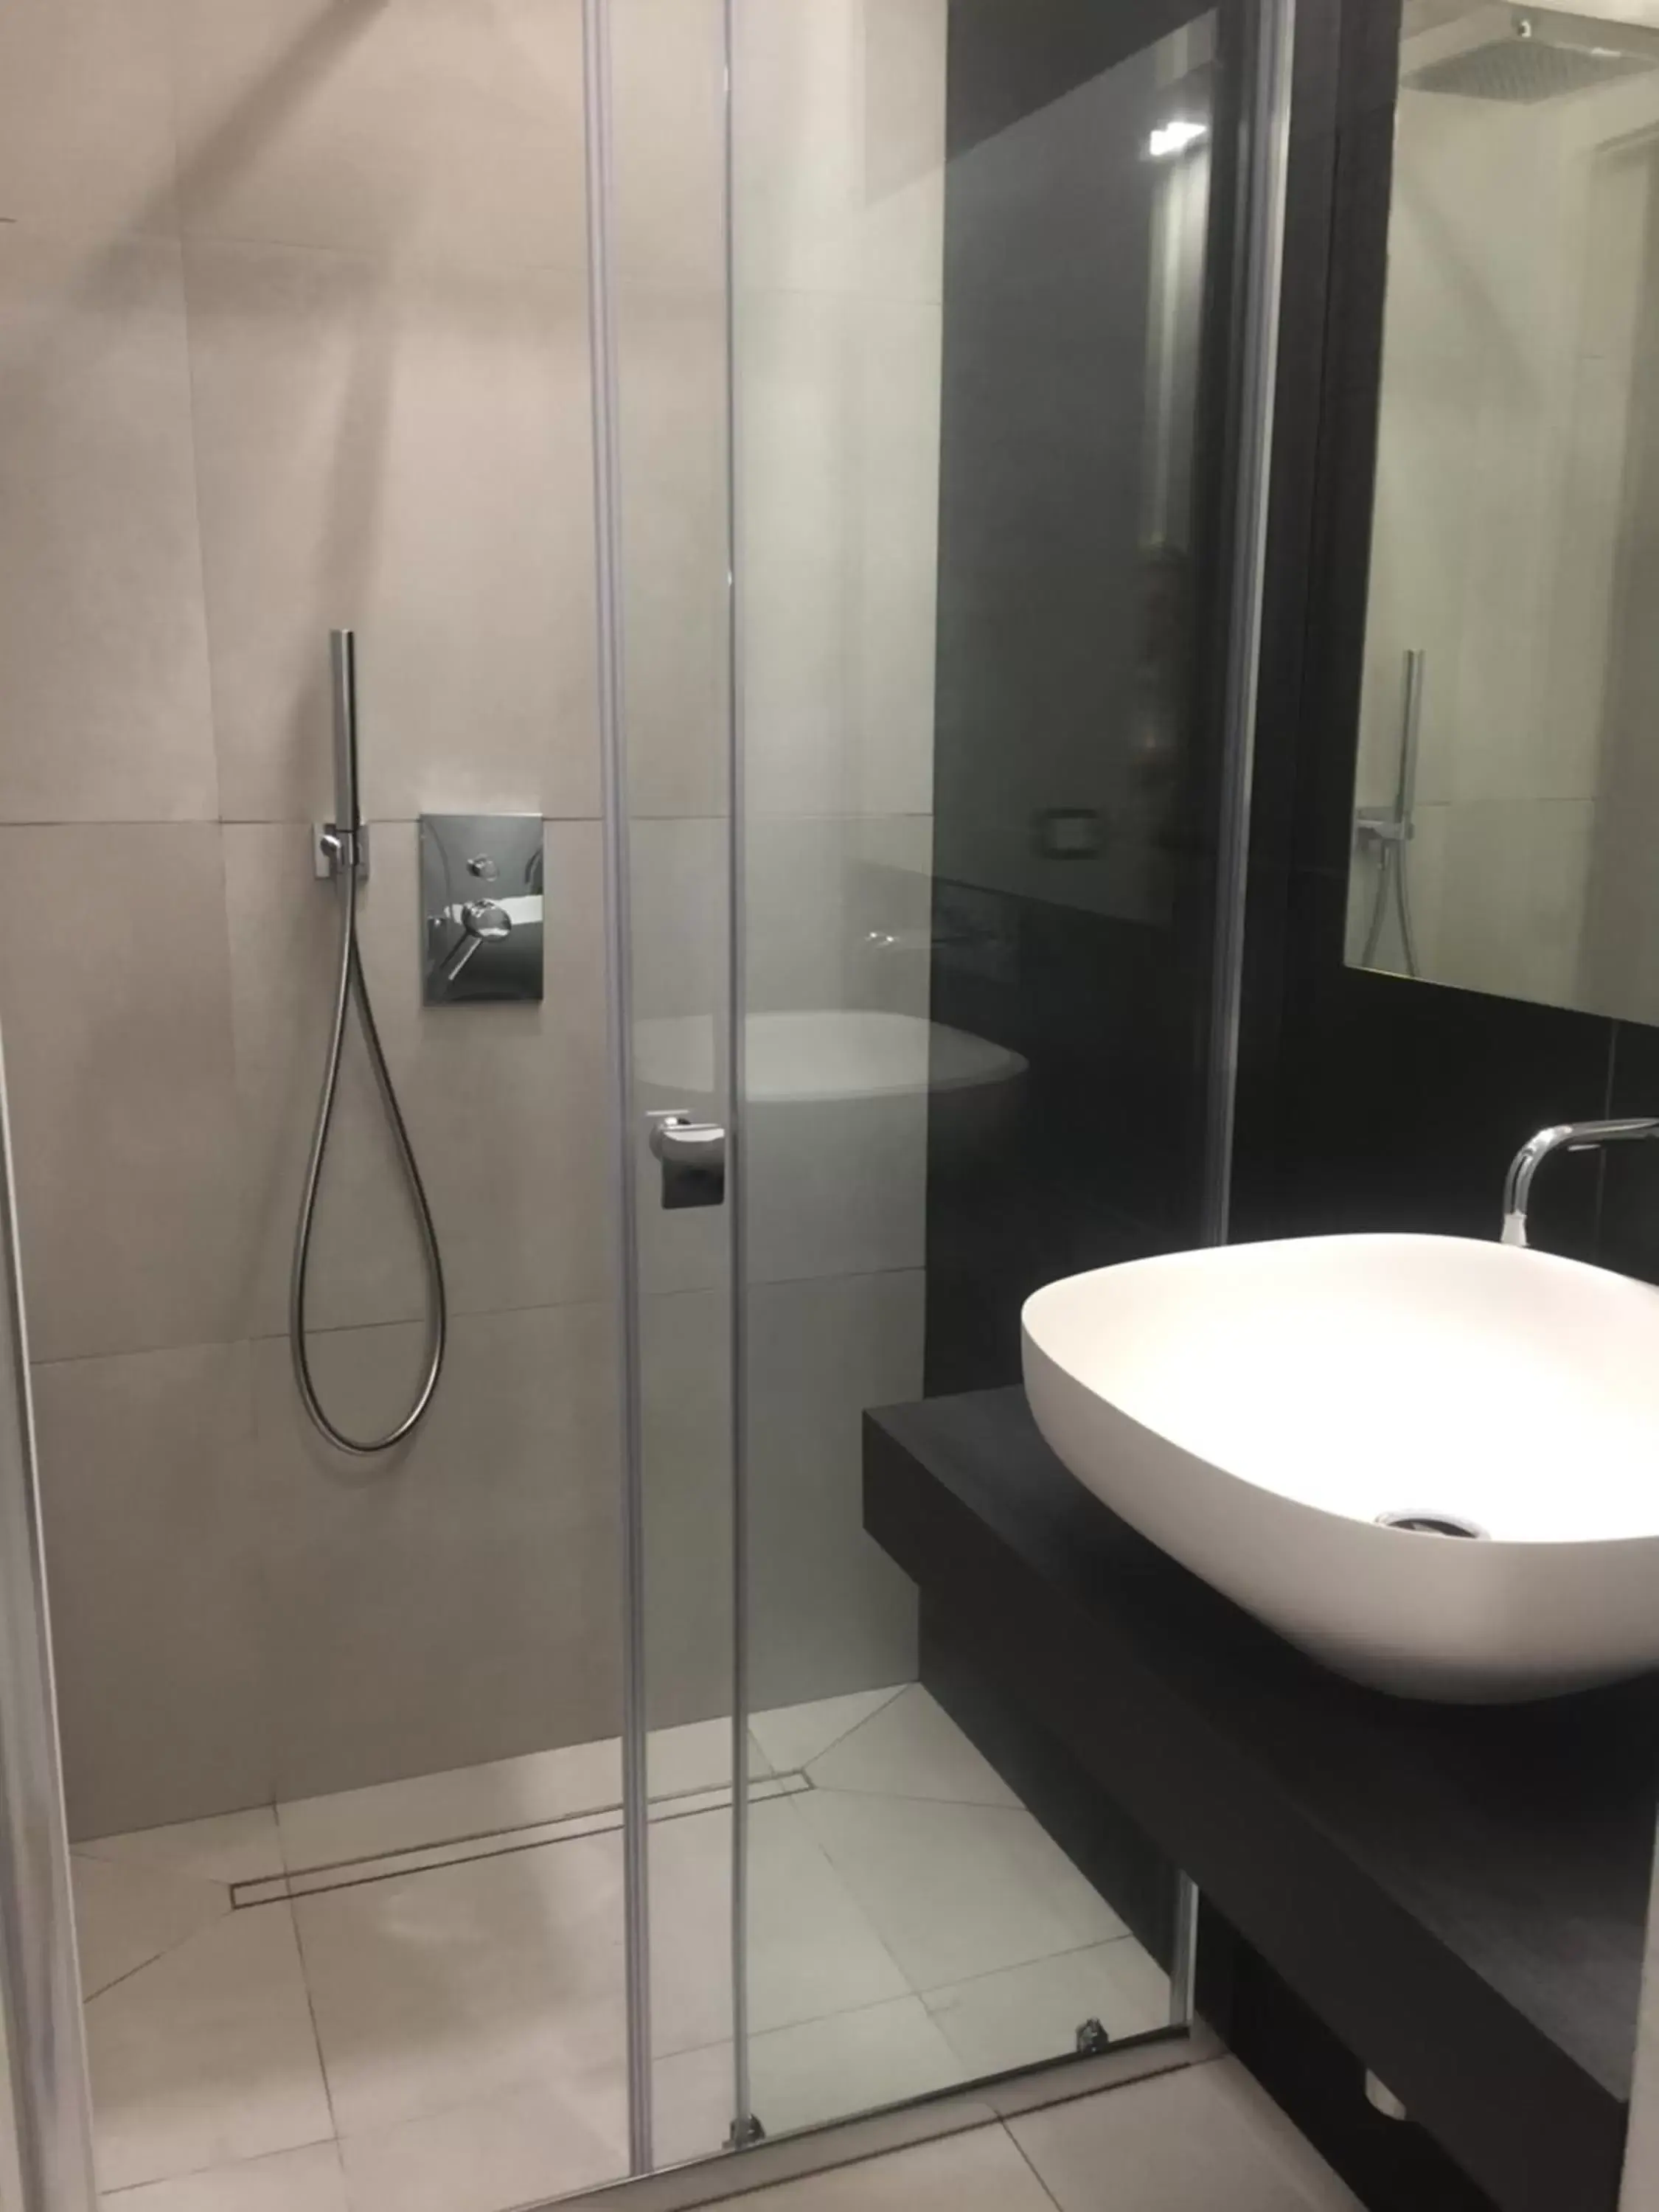 Bathroom in B&B Galleria Cavour